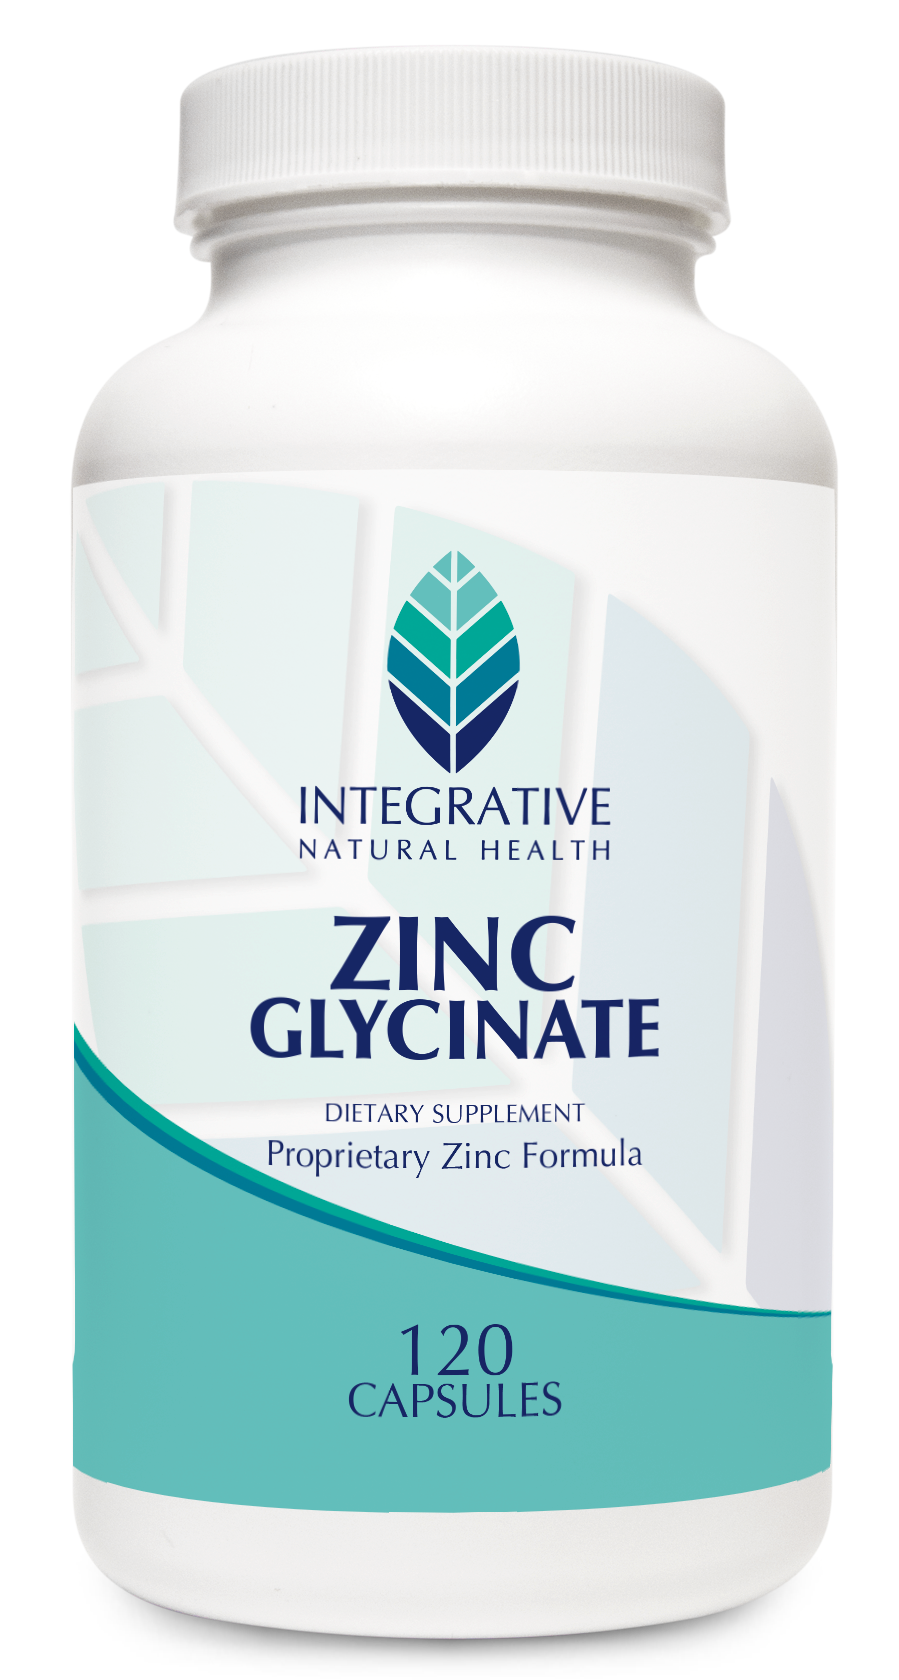 Zinc glycinate